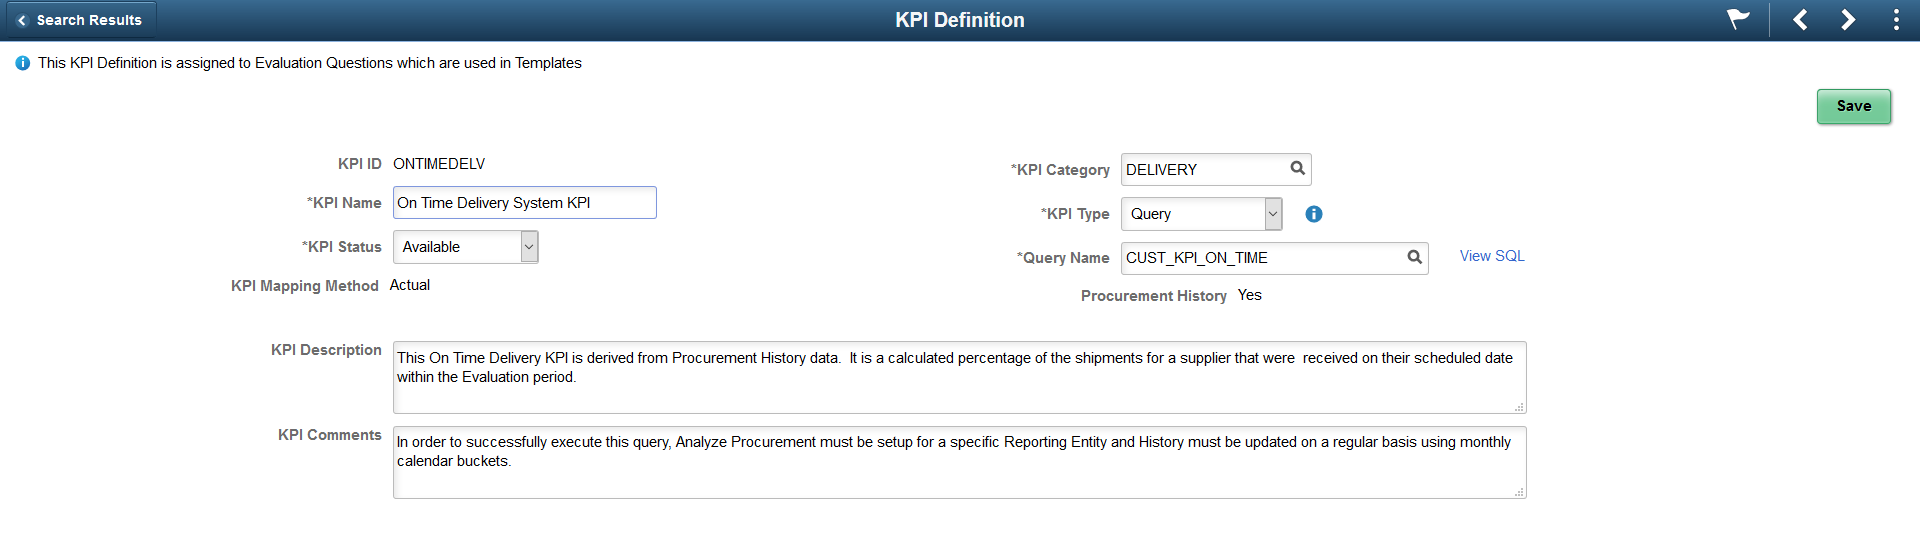 KPI Definition Messages